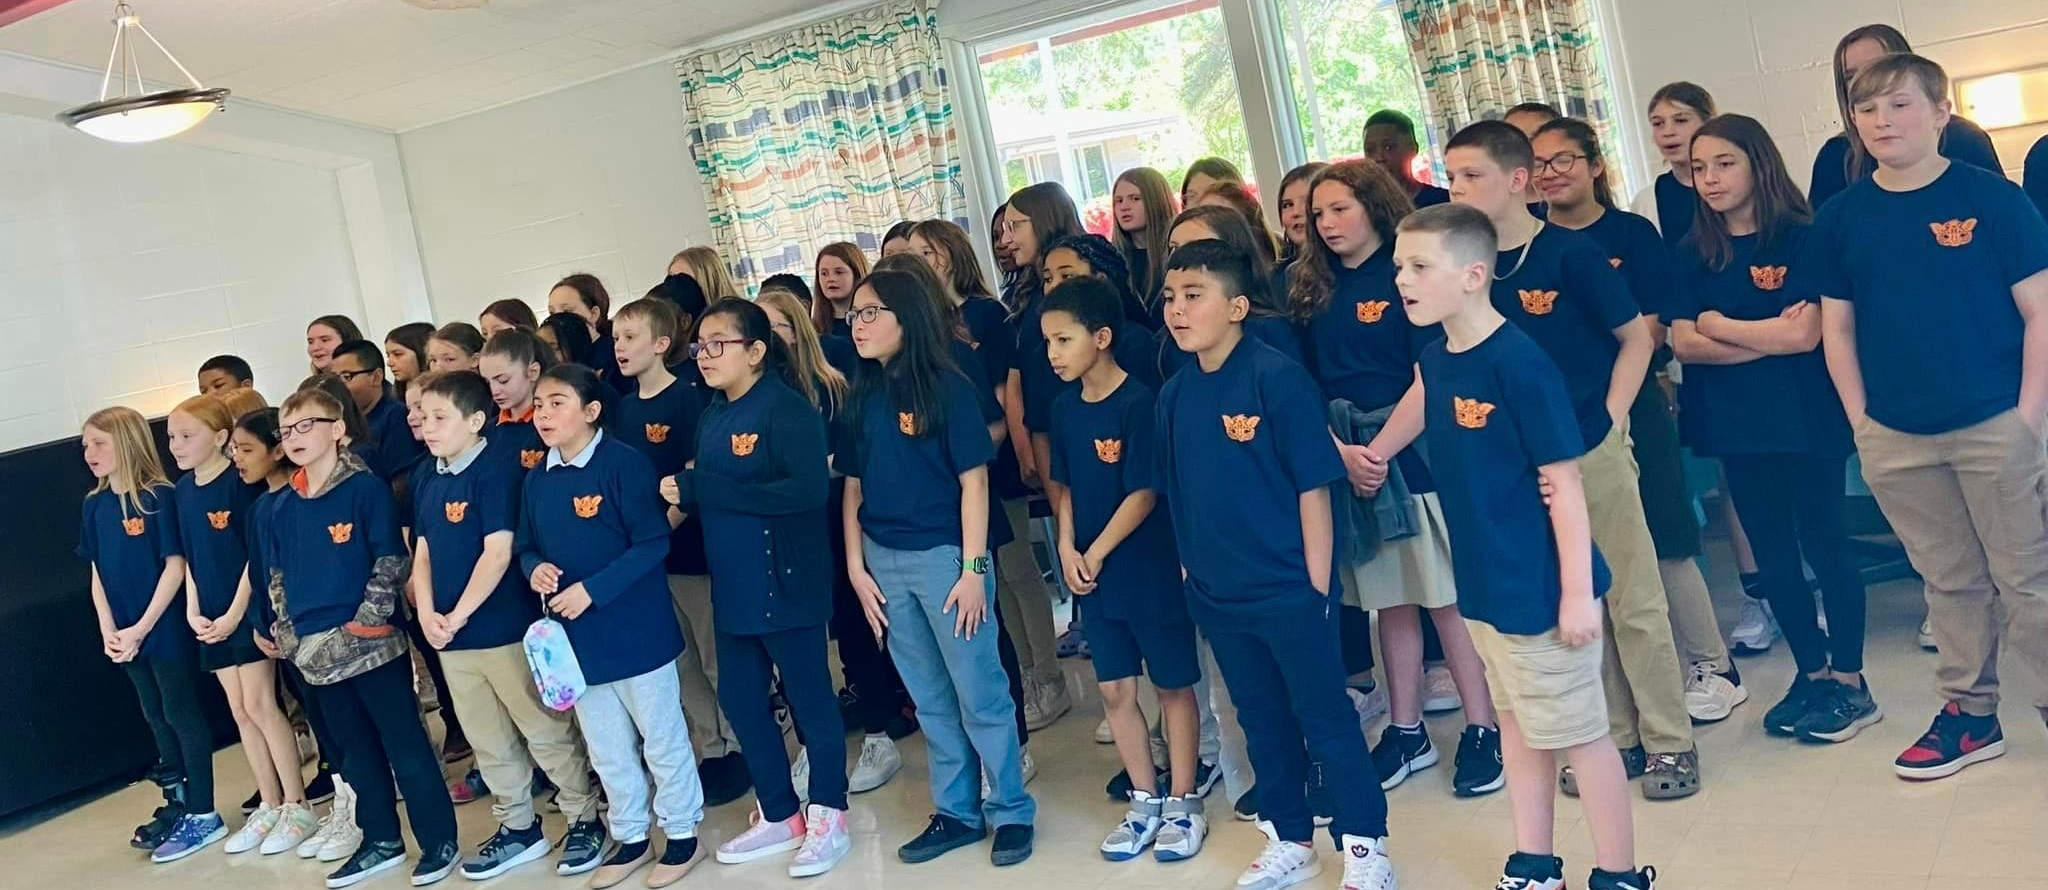 Delmar Elementary Choir